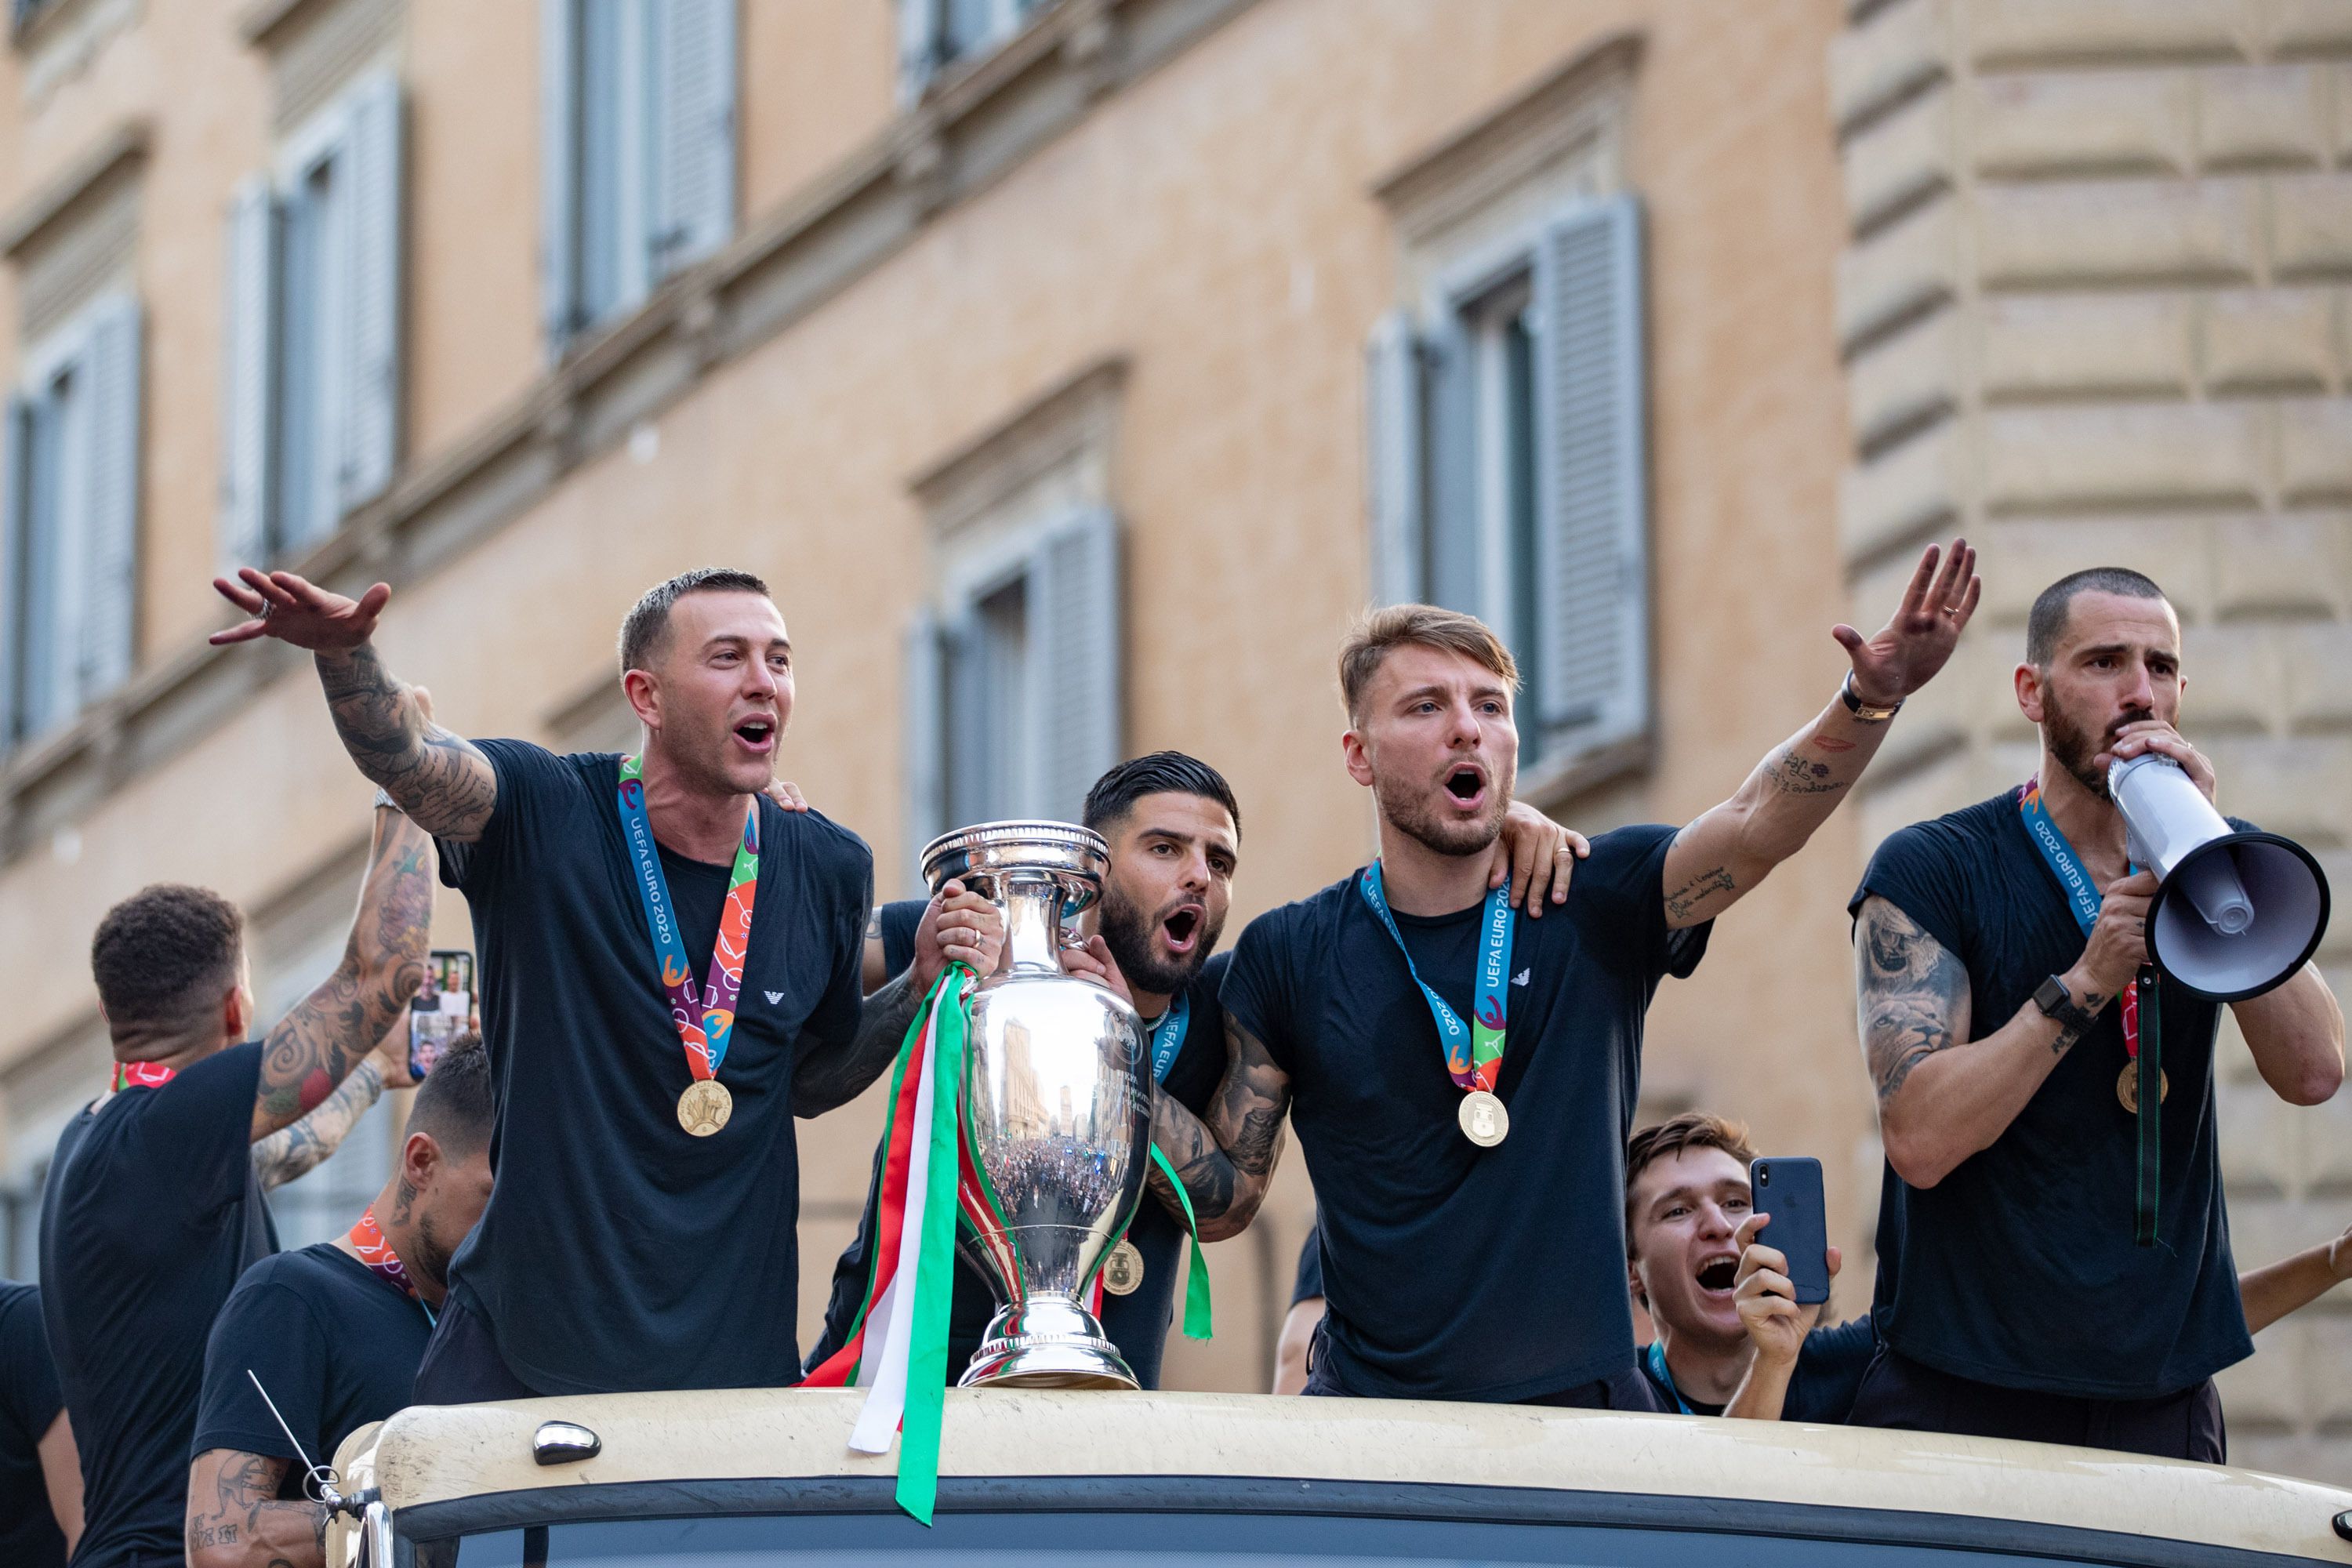 Az olasz válogatott sztárjai egy évvel ezelőtt az Európa bajnoki győzelmet ünnepelték, idén talán a vb részvétel miatt is hasonló örömujjongásban törnének ki / Fotó: Northfoto